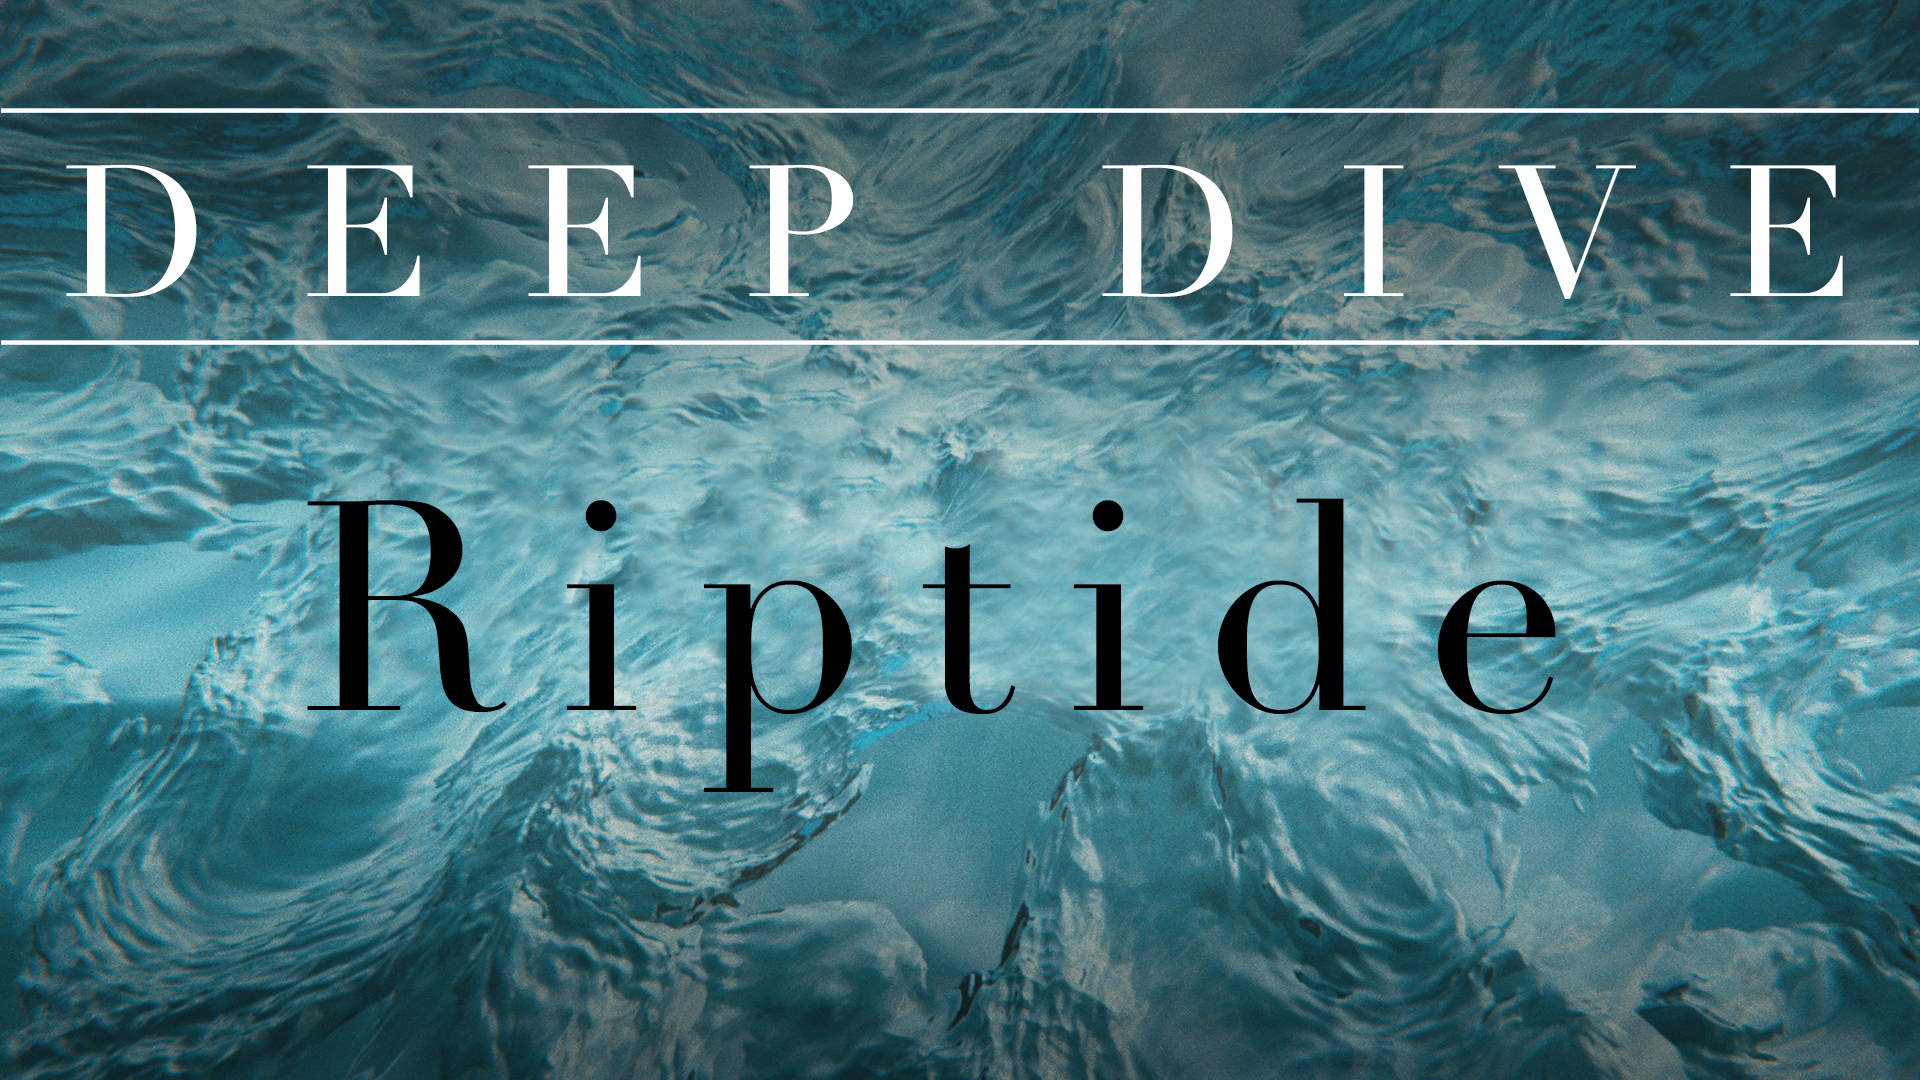 Deep Dive Part 2 "Riptide" (THRIVE)